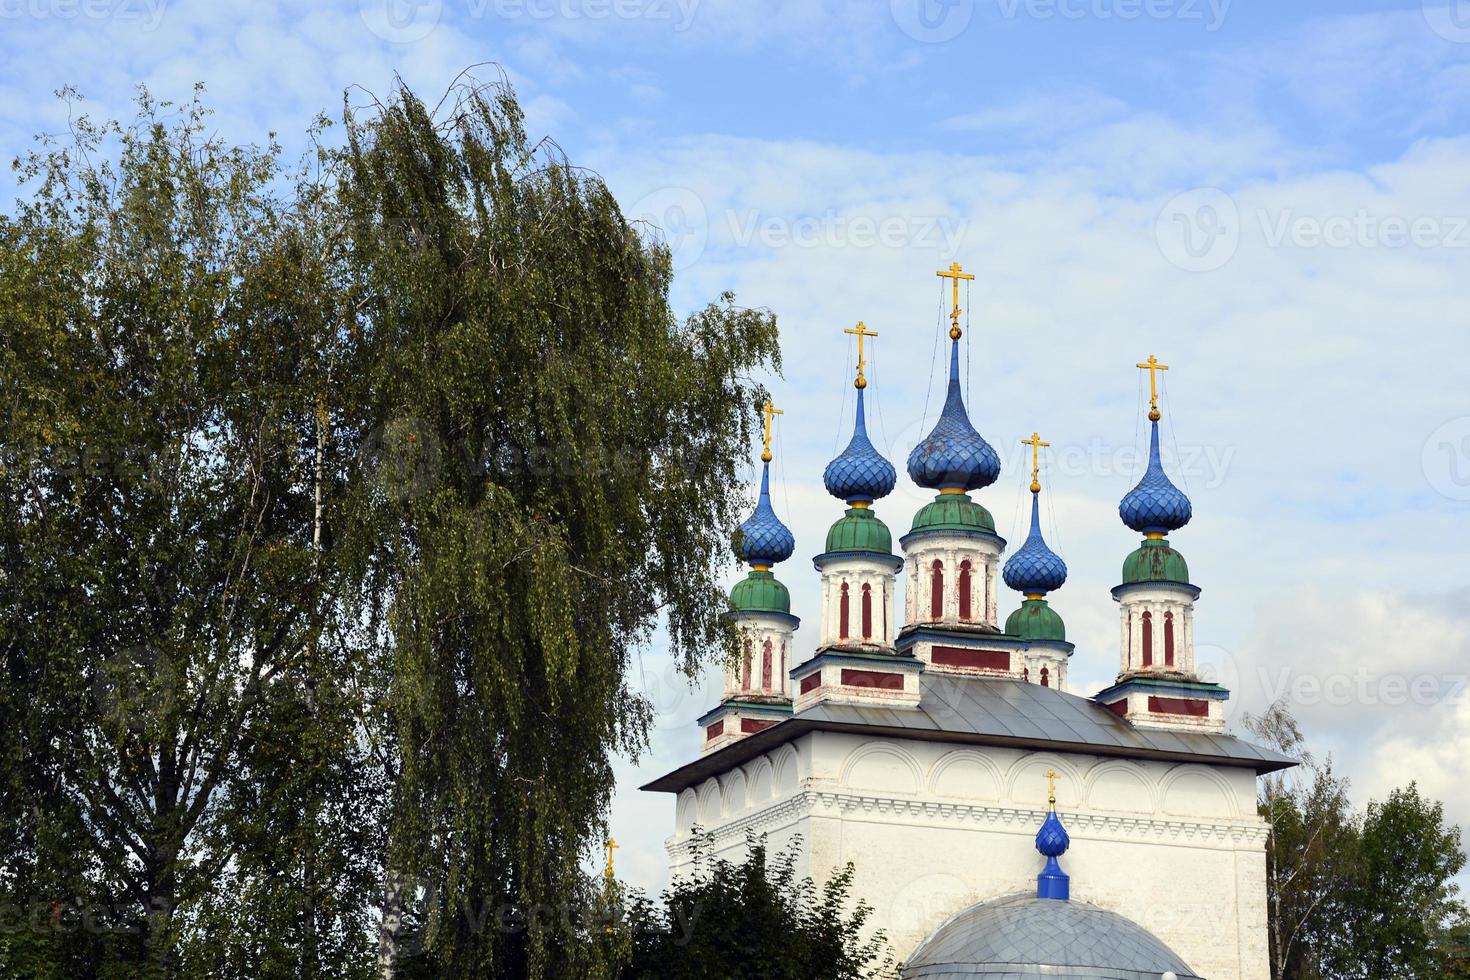 cúpulas de igreja com cruzes contra o céu azul. templo de pedra branca na aldeia russa. foto